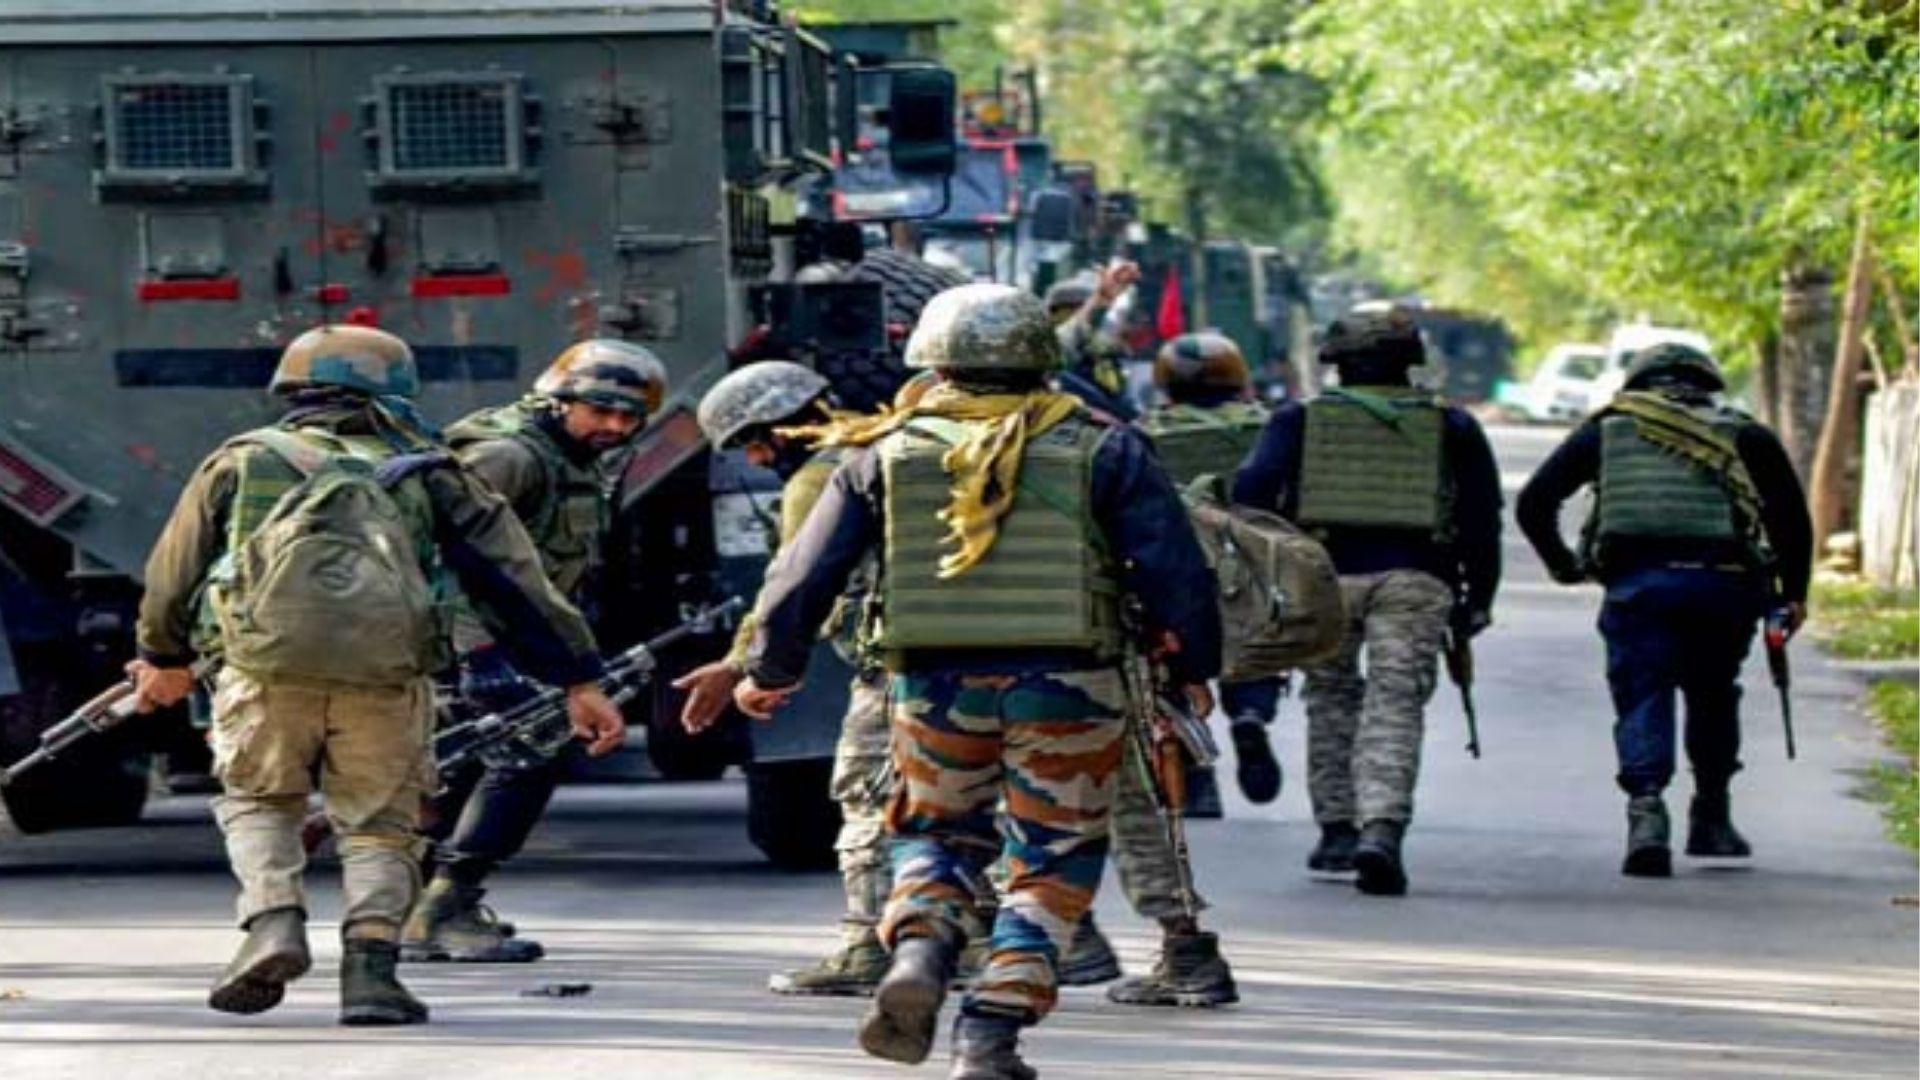   जम्मू-कश्मीर के कुपवाड़ा में सेना और आतंकियों के बीच मुठभेड़ जारी, 